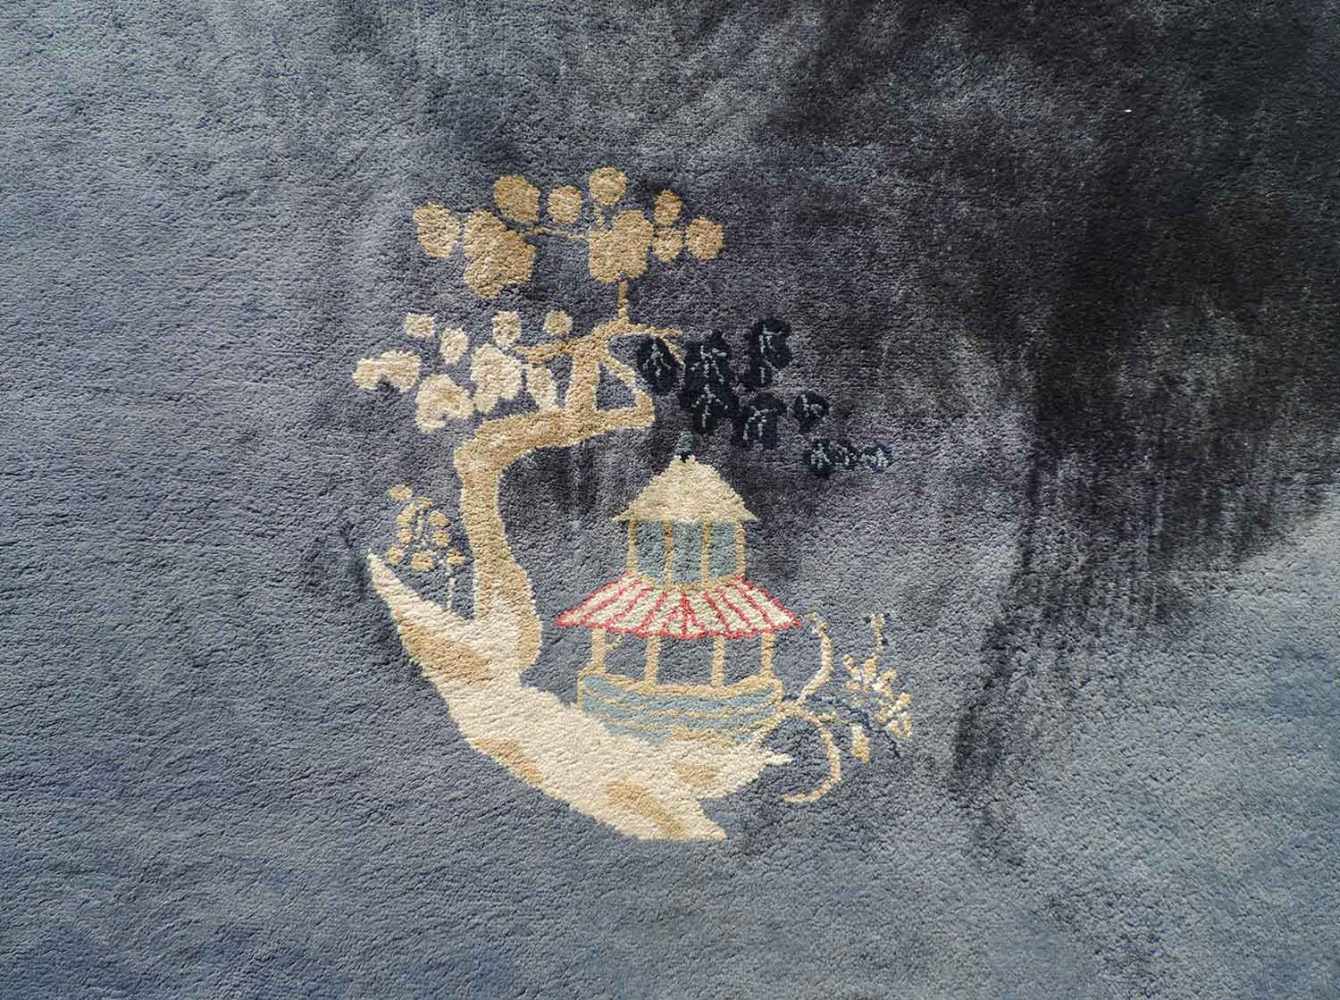 Peking Teppich. China. Antik. Um 1920 361 cm x 267 cm. Handgeknüpft. Mancesterwolle auf Baumwolle. - Image 4 of 8